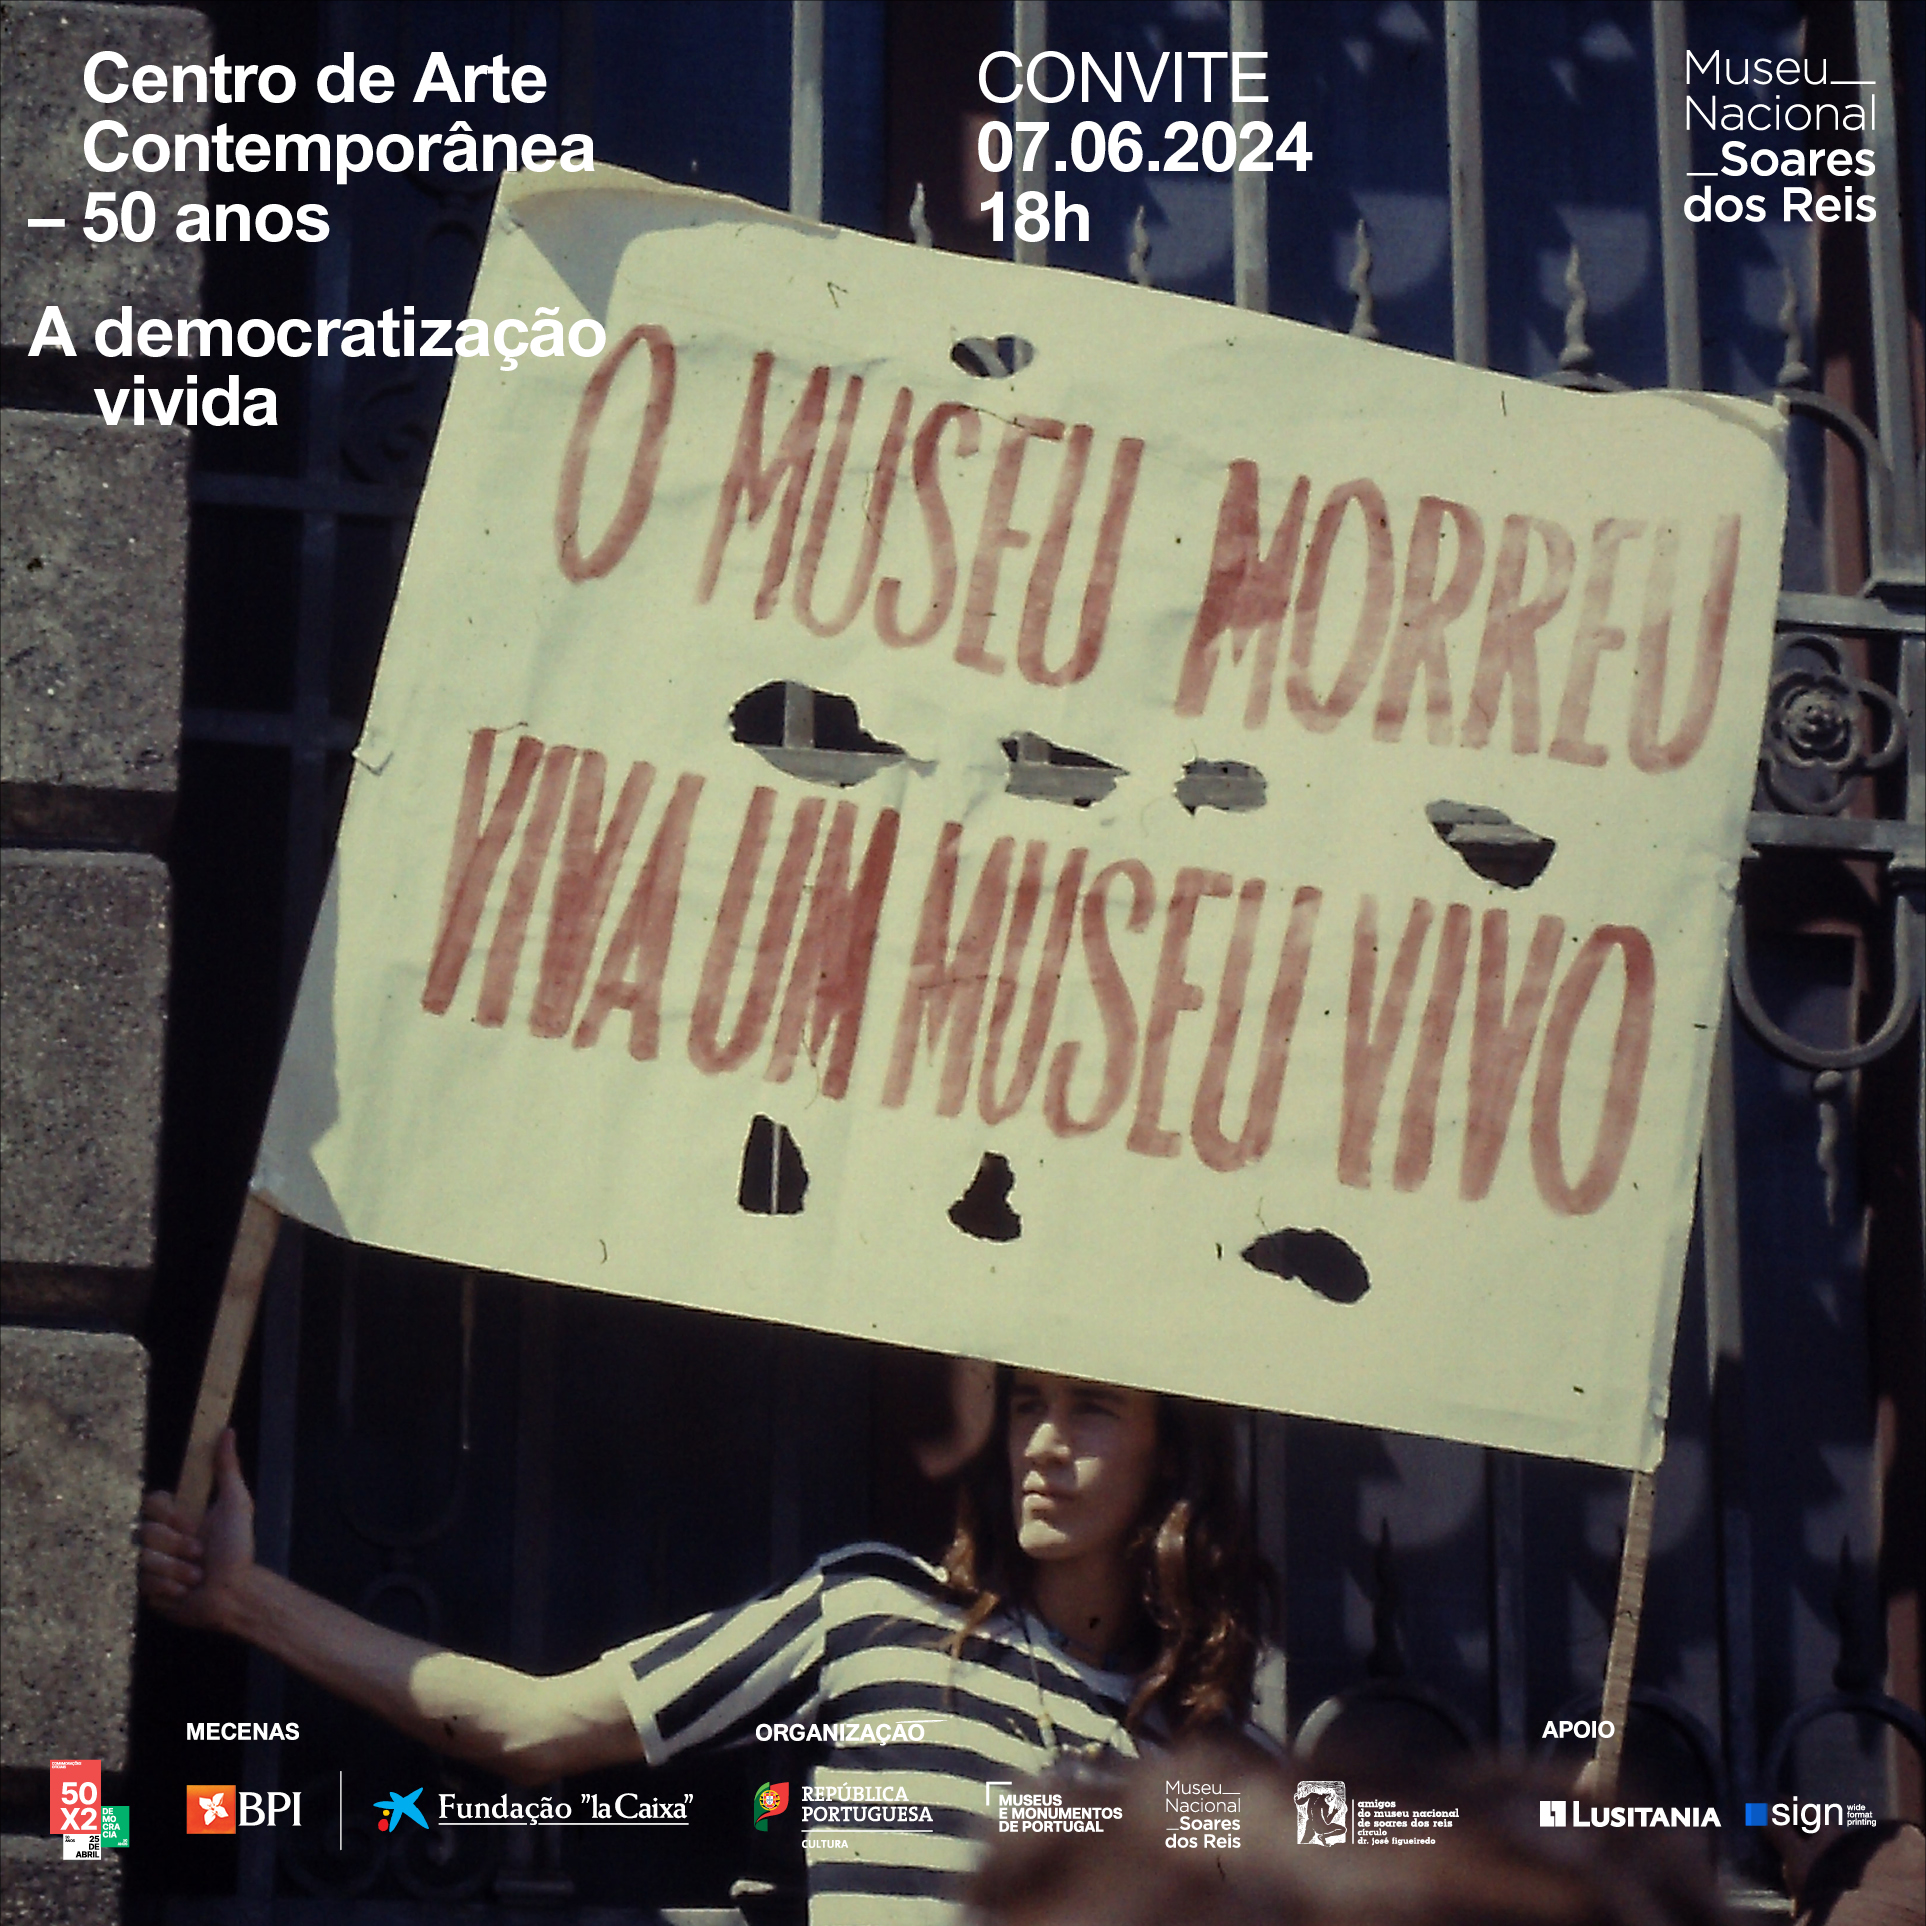 Capa do Evento Centro de Arte Contemporânea - 50 anos: A Democratização Vivida